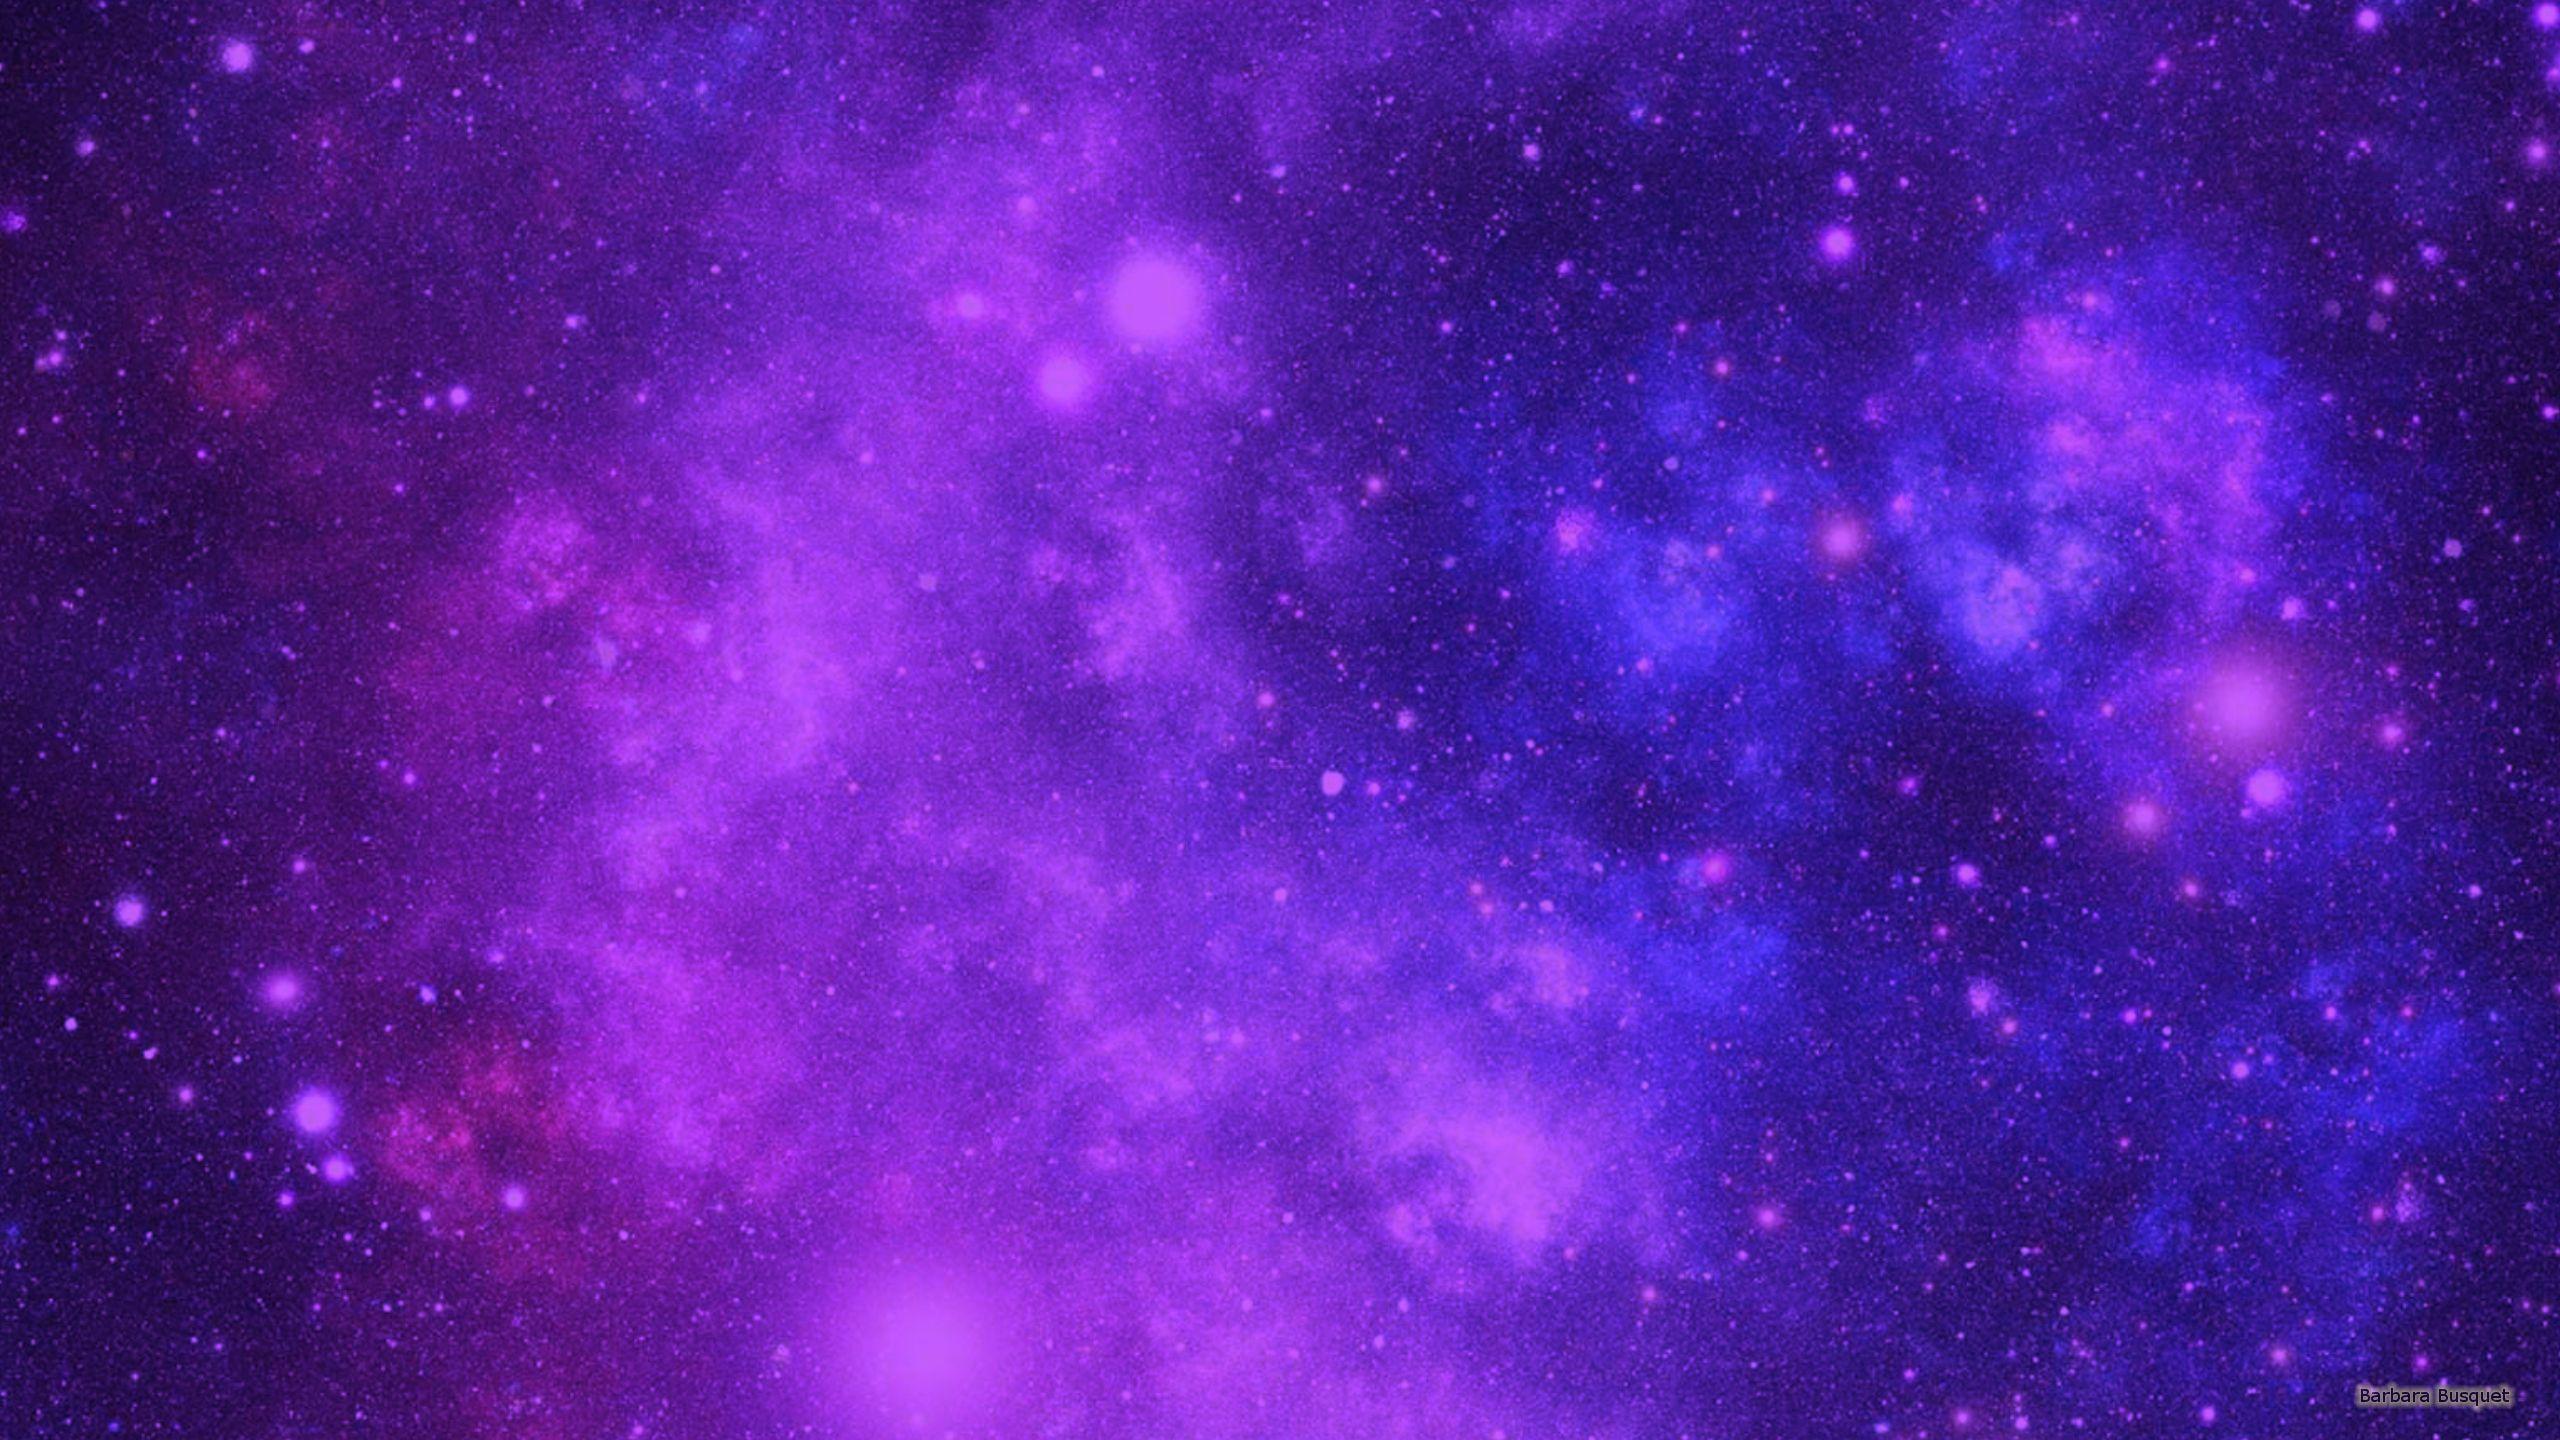 Hình nền thiên hà màu tím đẹp mê hoặc, sắc độ trương nét, cùng với những chi tiết đậm chất thiên hà, sẽ mang đến trải nghiệm tuyệt vời dành cho mọi người. Hãy ngắm nhìn những hình nền thiên hà tuyệt đẹp này.